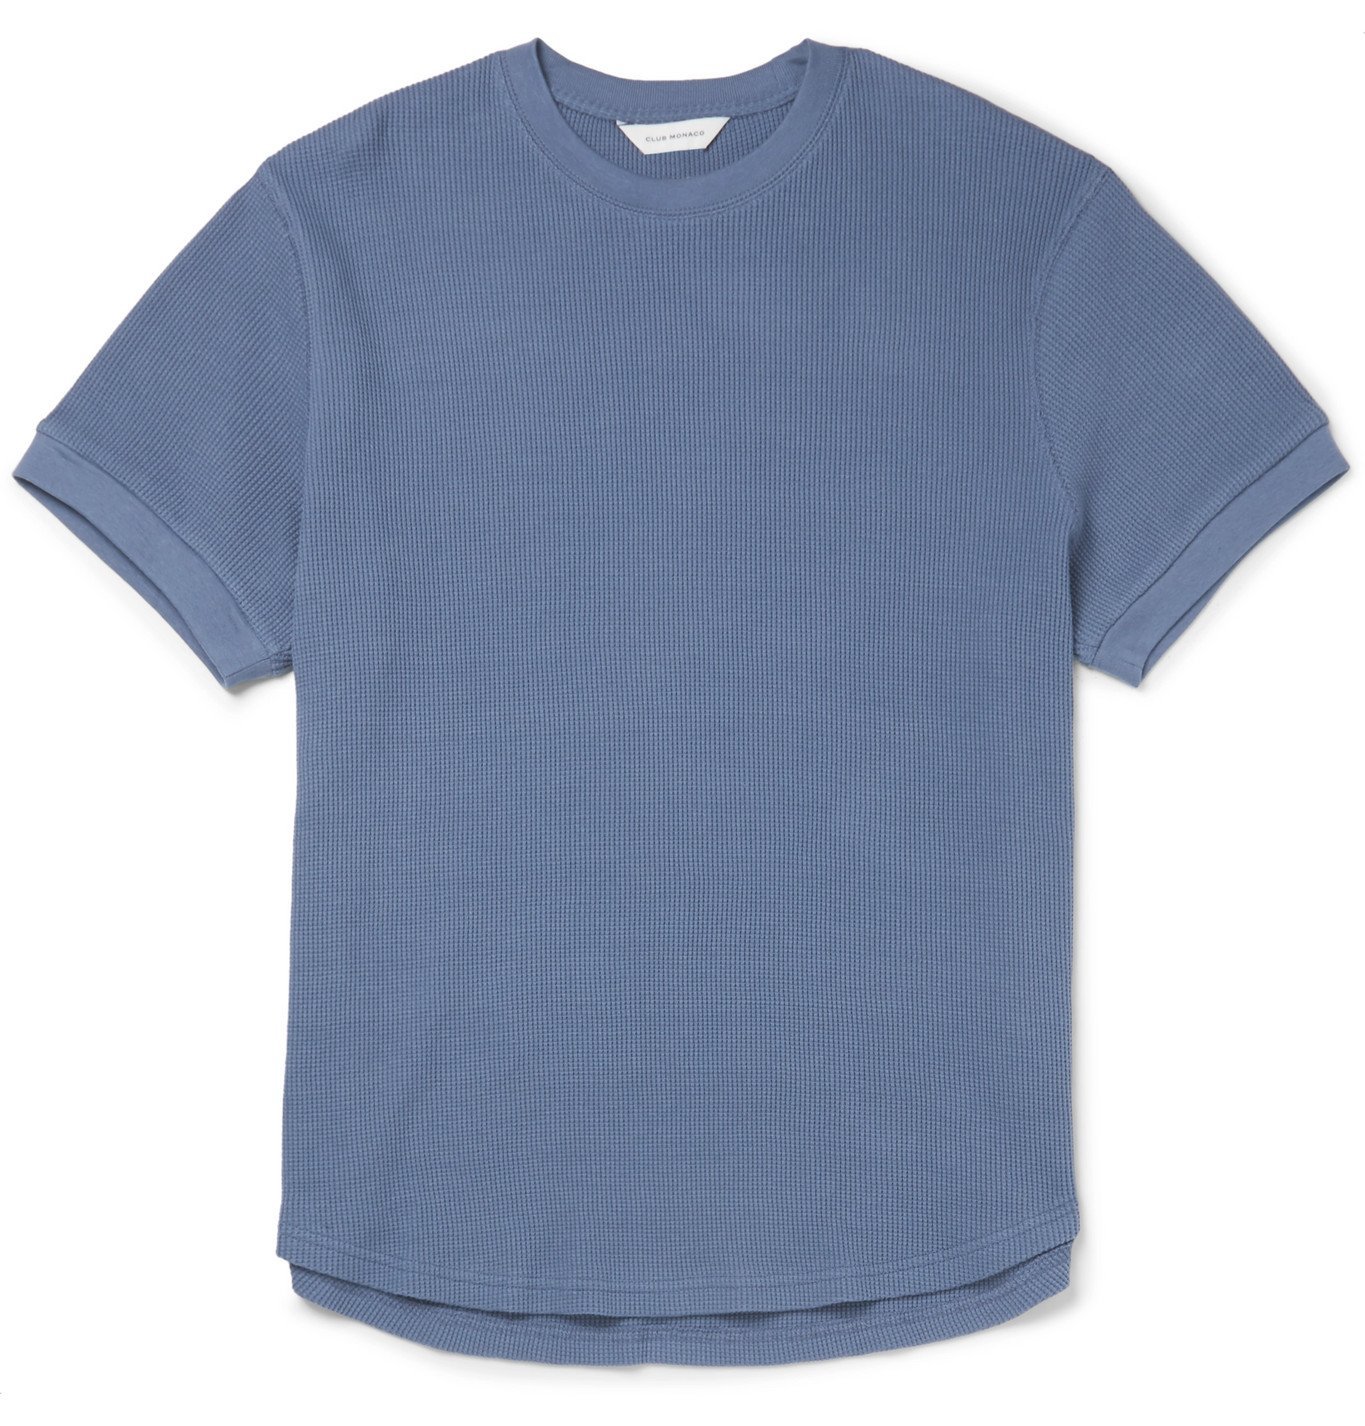 Club Monaco - Waffle-Knit Cotton T-Shirt - Blue Club Monaco